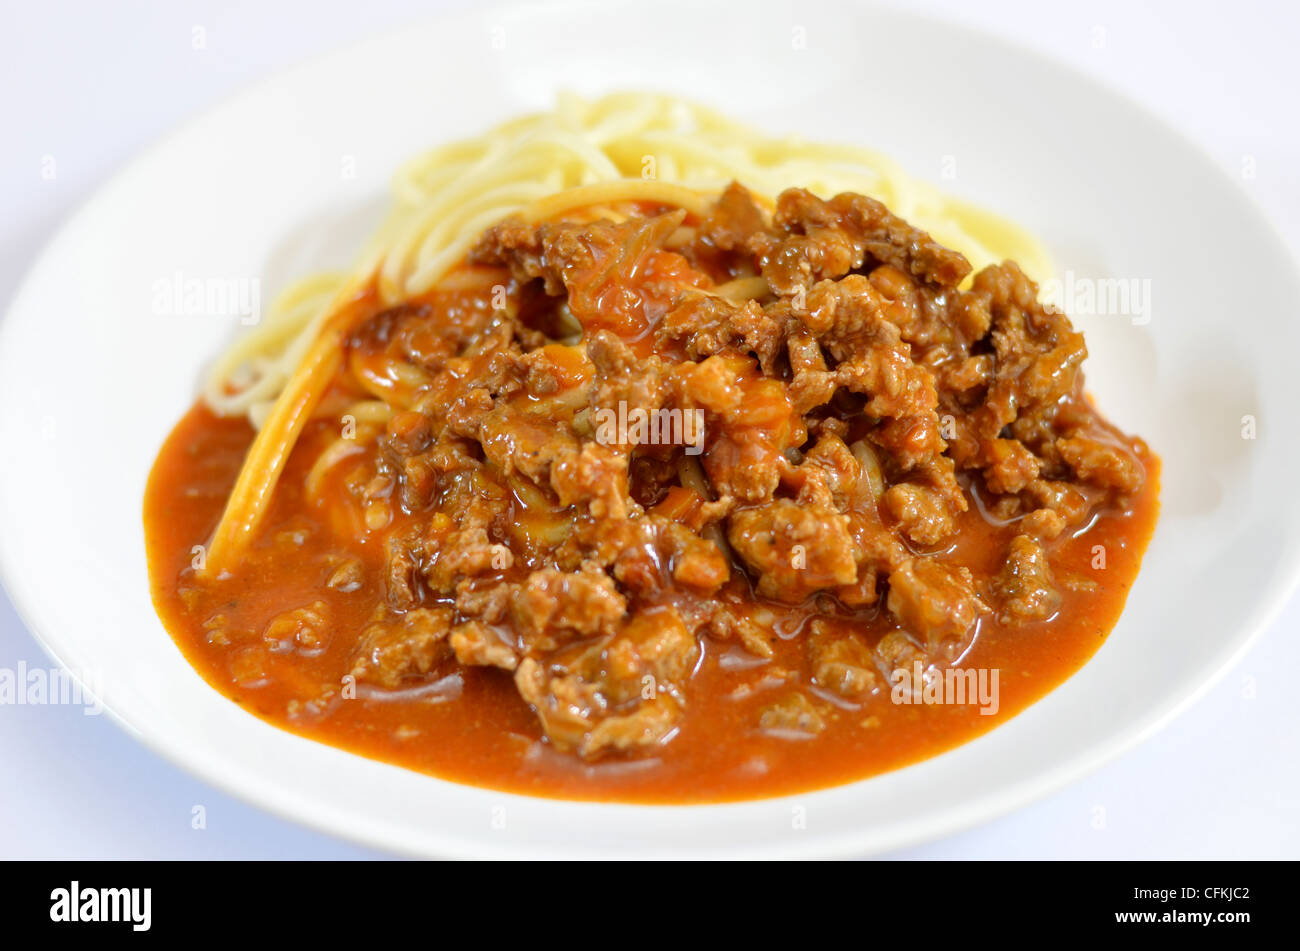 Spaghettis à la bolognaise est une cuisine populaire , spaghetti avec sauce tomate et viande bovine Banque D'Images